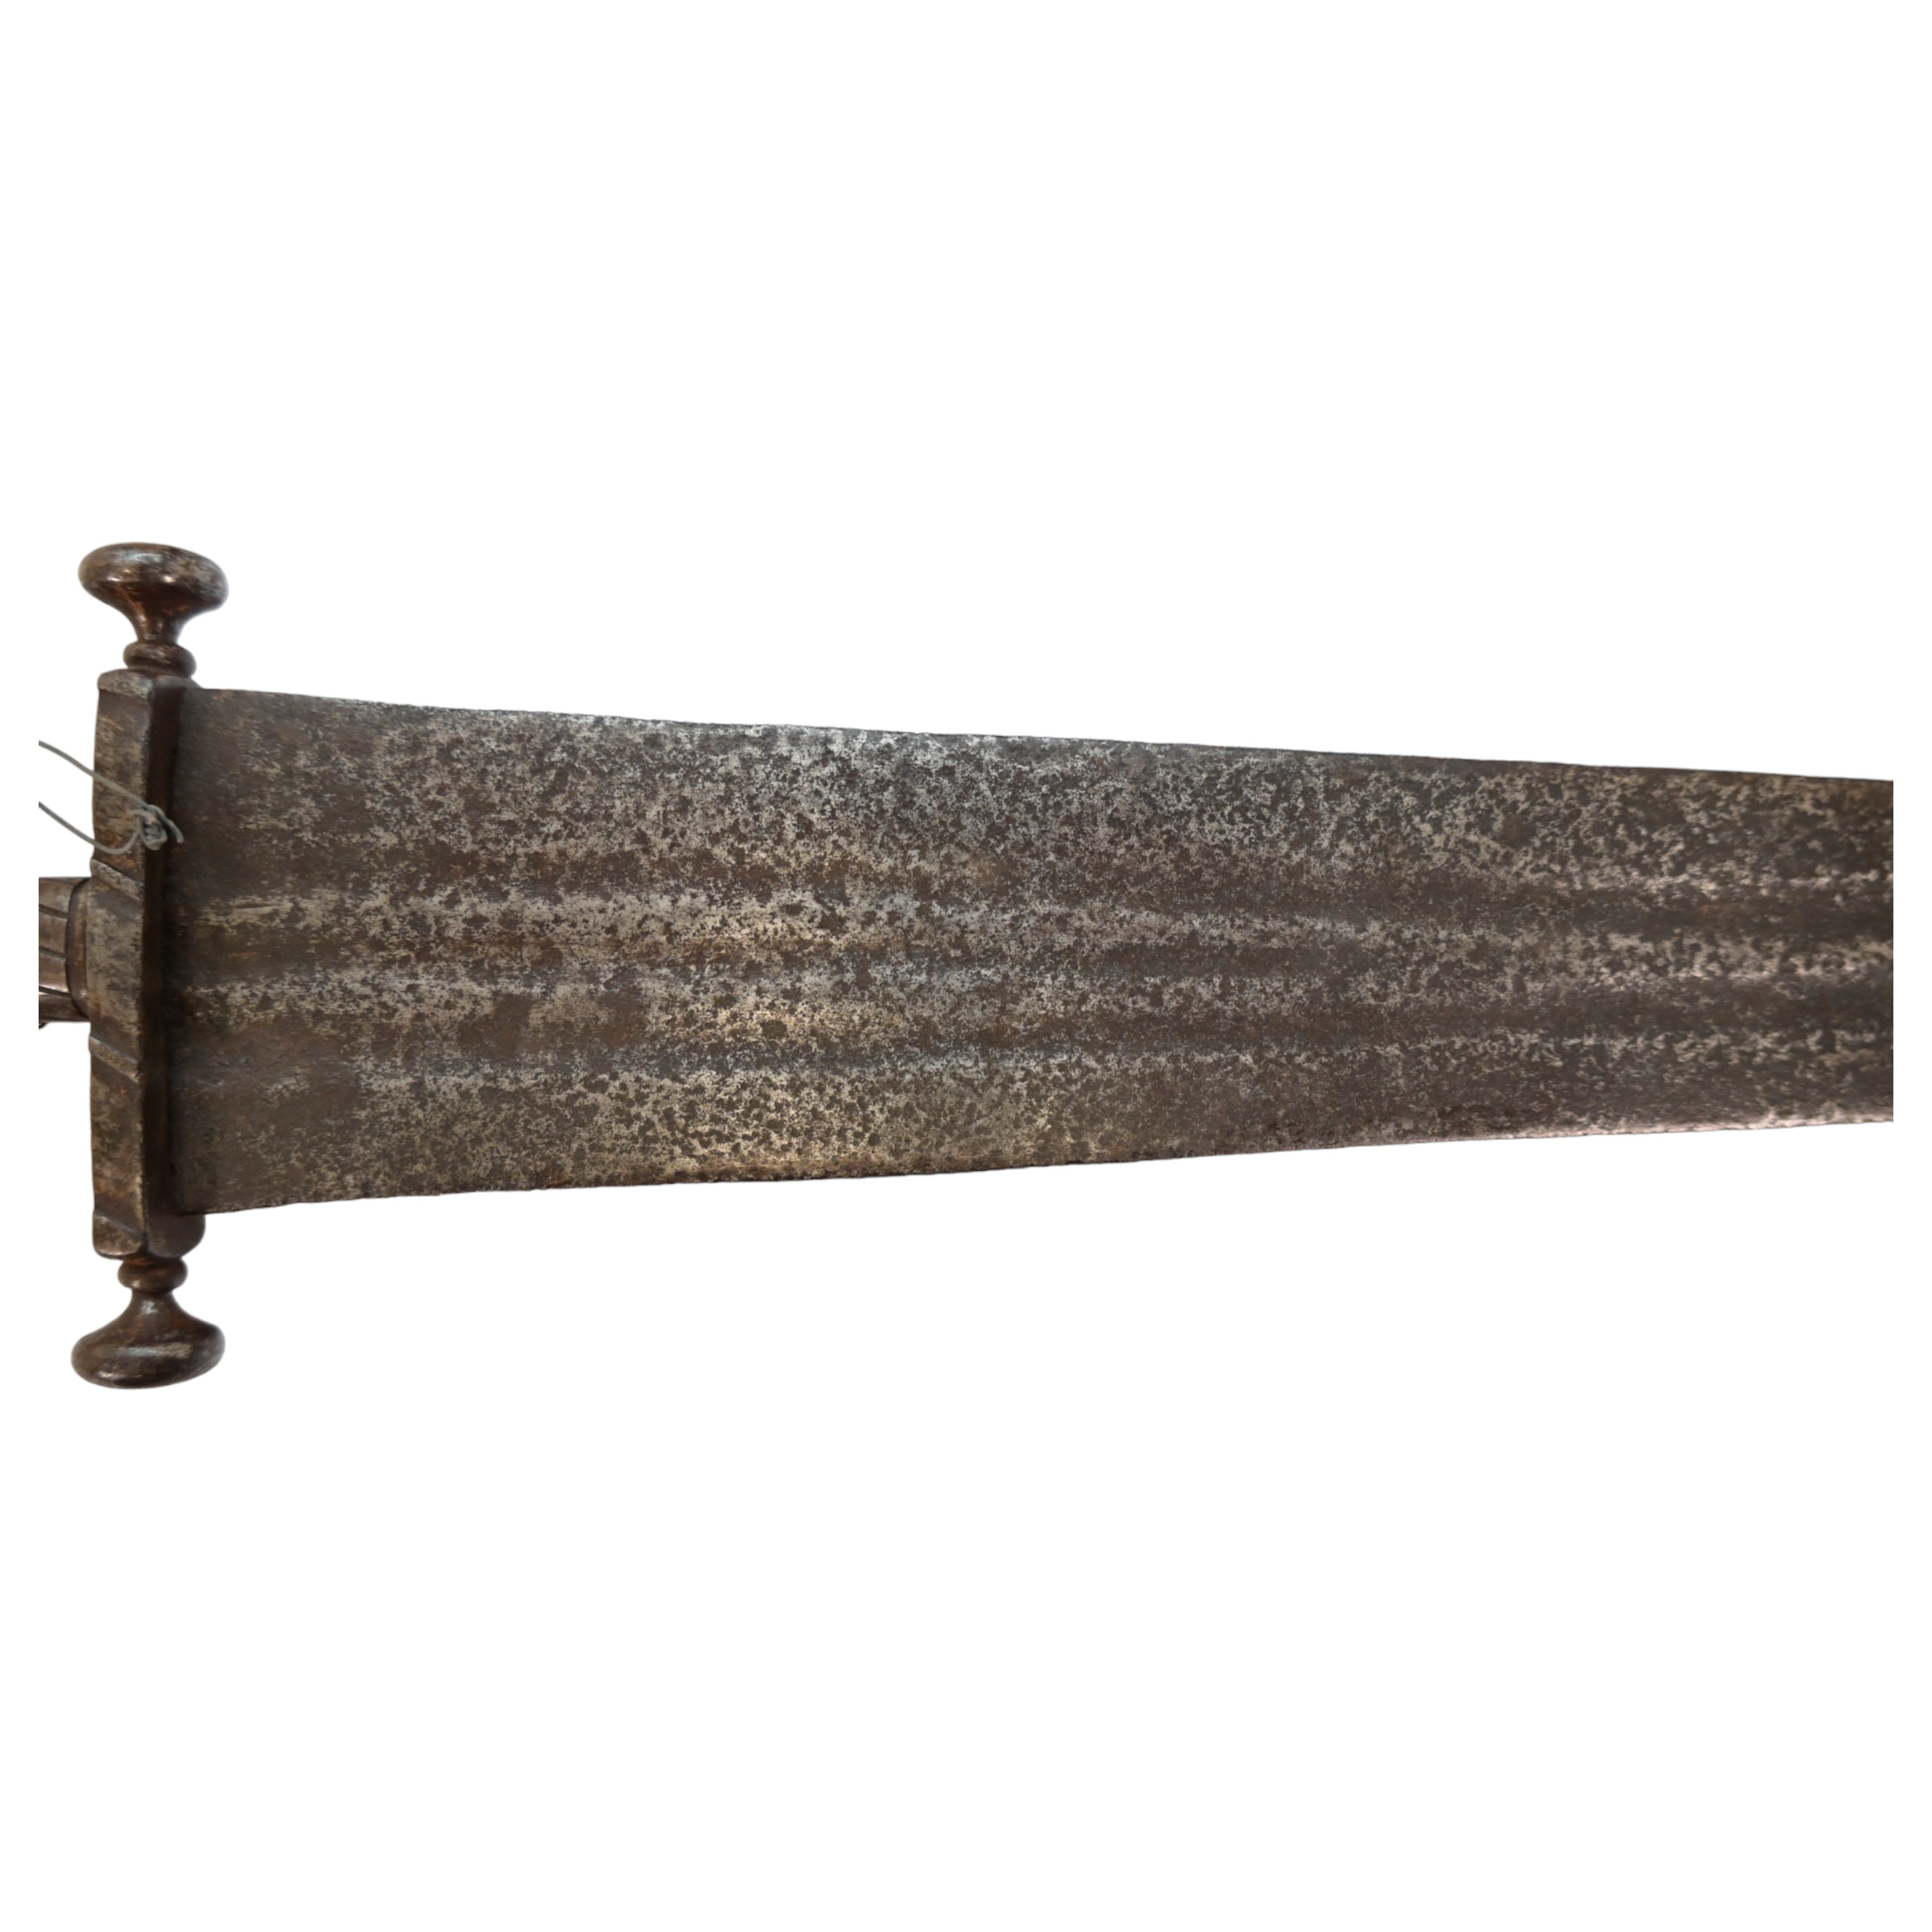 Rare Cinquedea type Sword, 16-17th Century, Italy. - Image 9 of 14